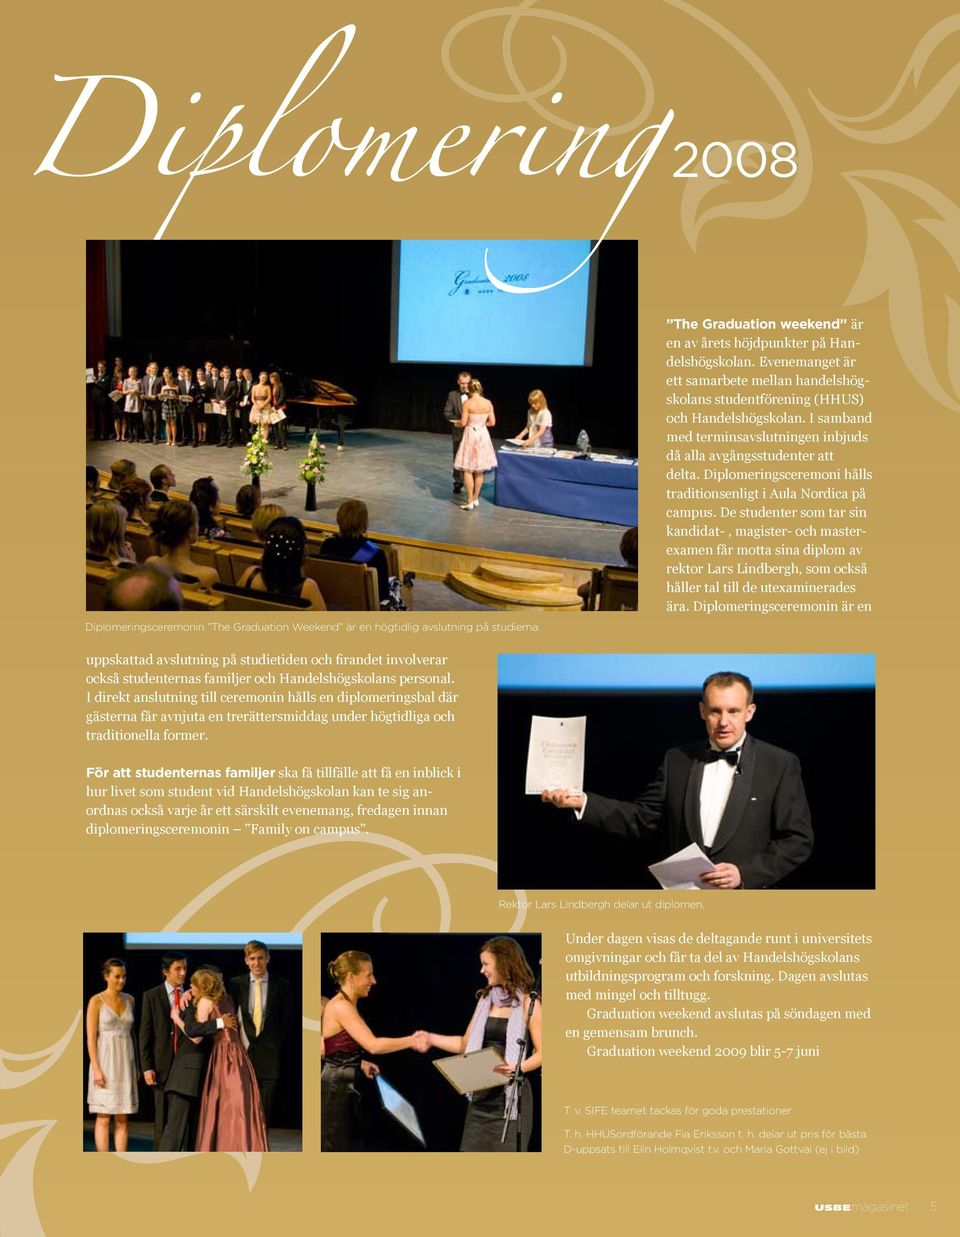 Diplomeringsceremoni hålls traditionsenligt i Aula Nordica på campus.